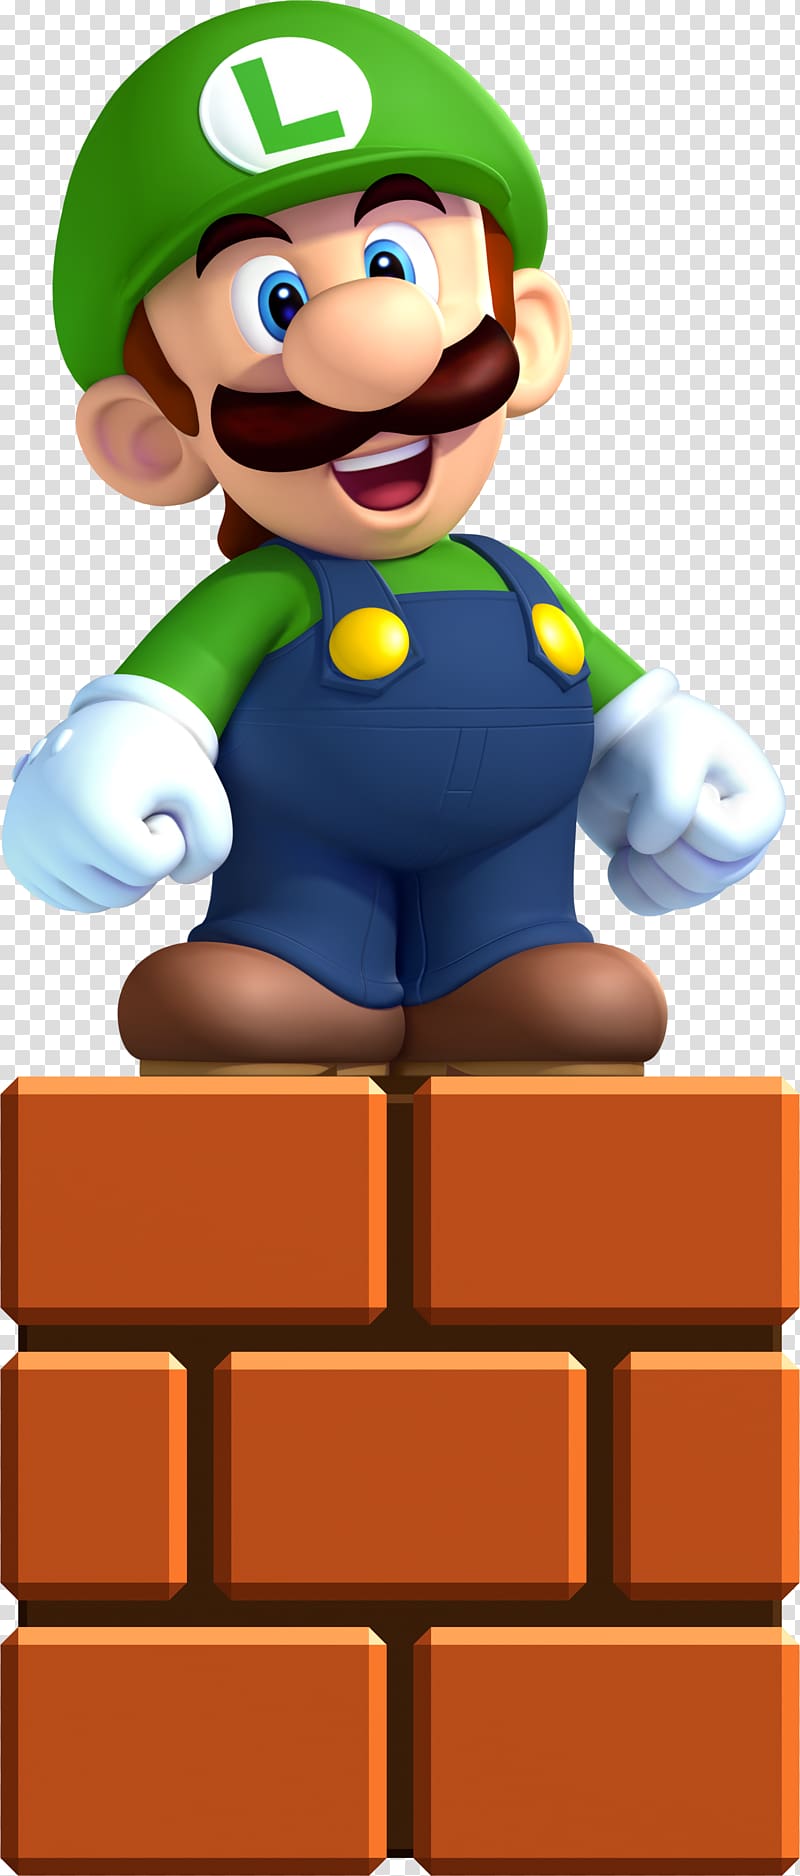 New Super Luigi U Mario Bros. New Super Mario Bros, luigi transparent background PNG clipart